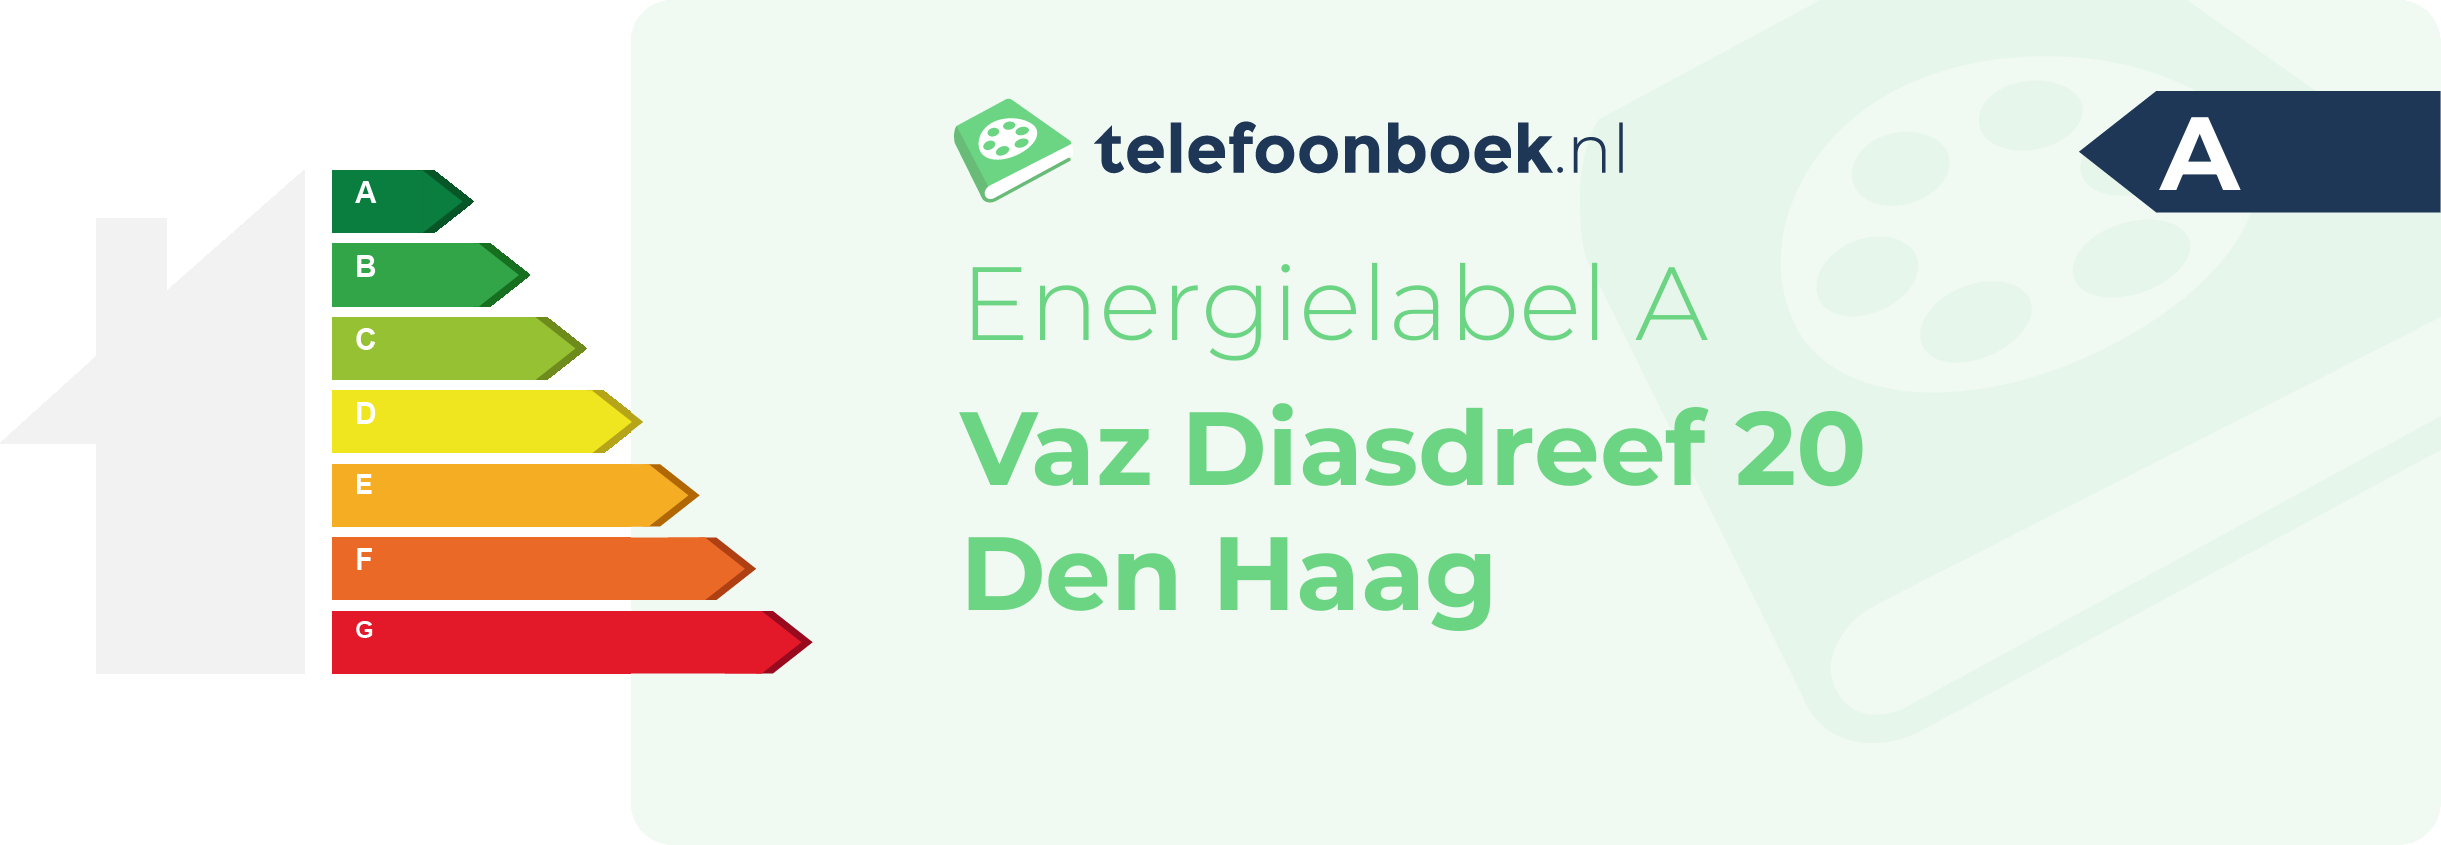 Energielabel Vaz Diasdreef 20 Den Haag